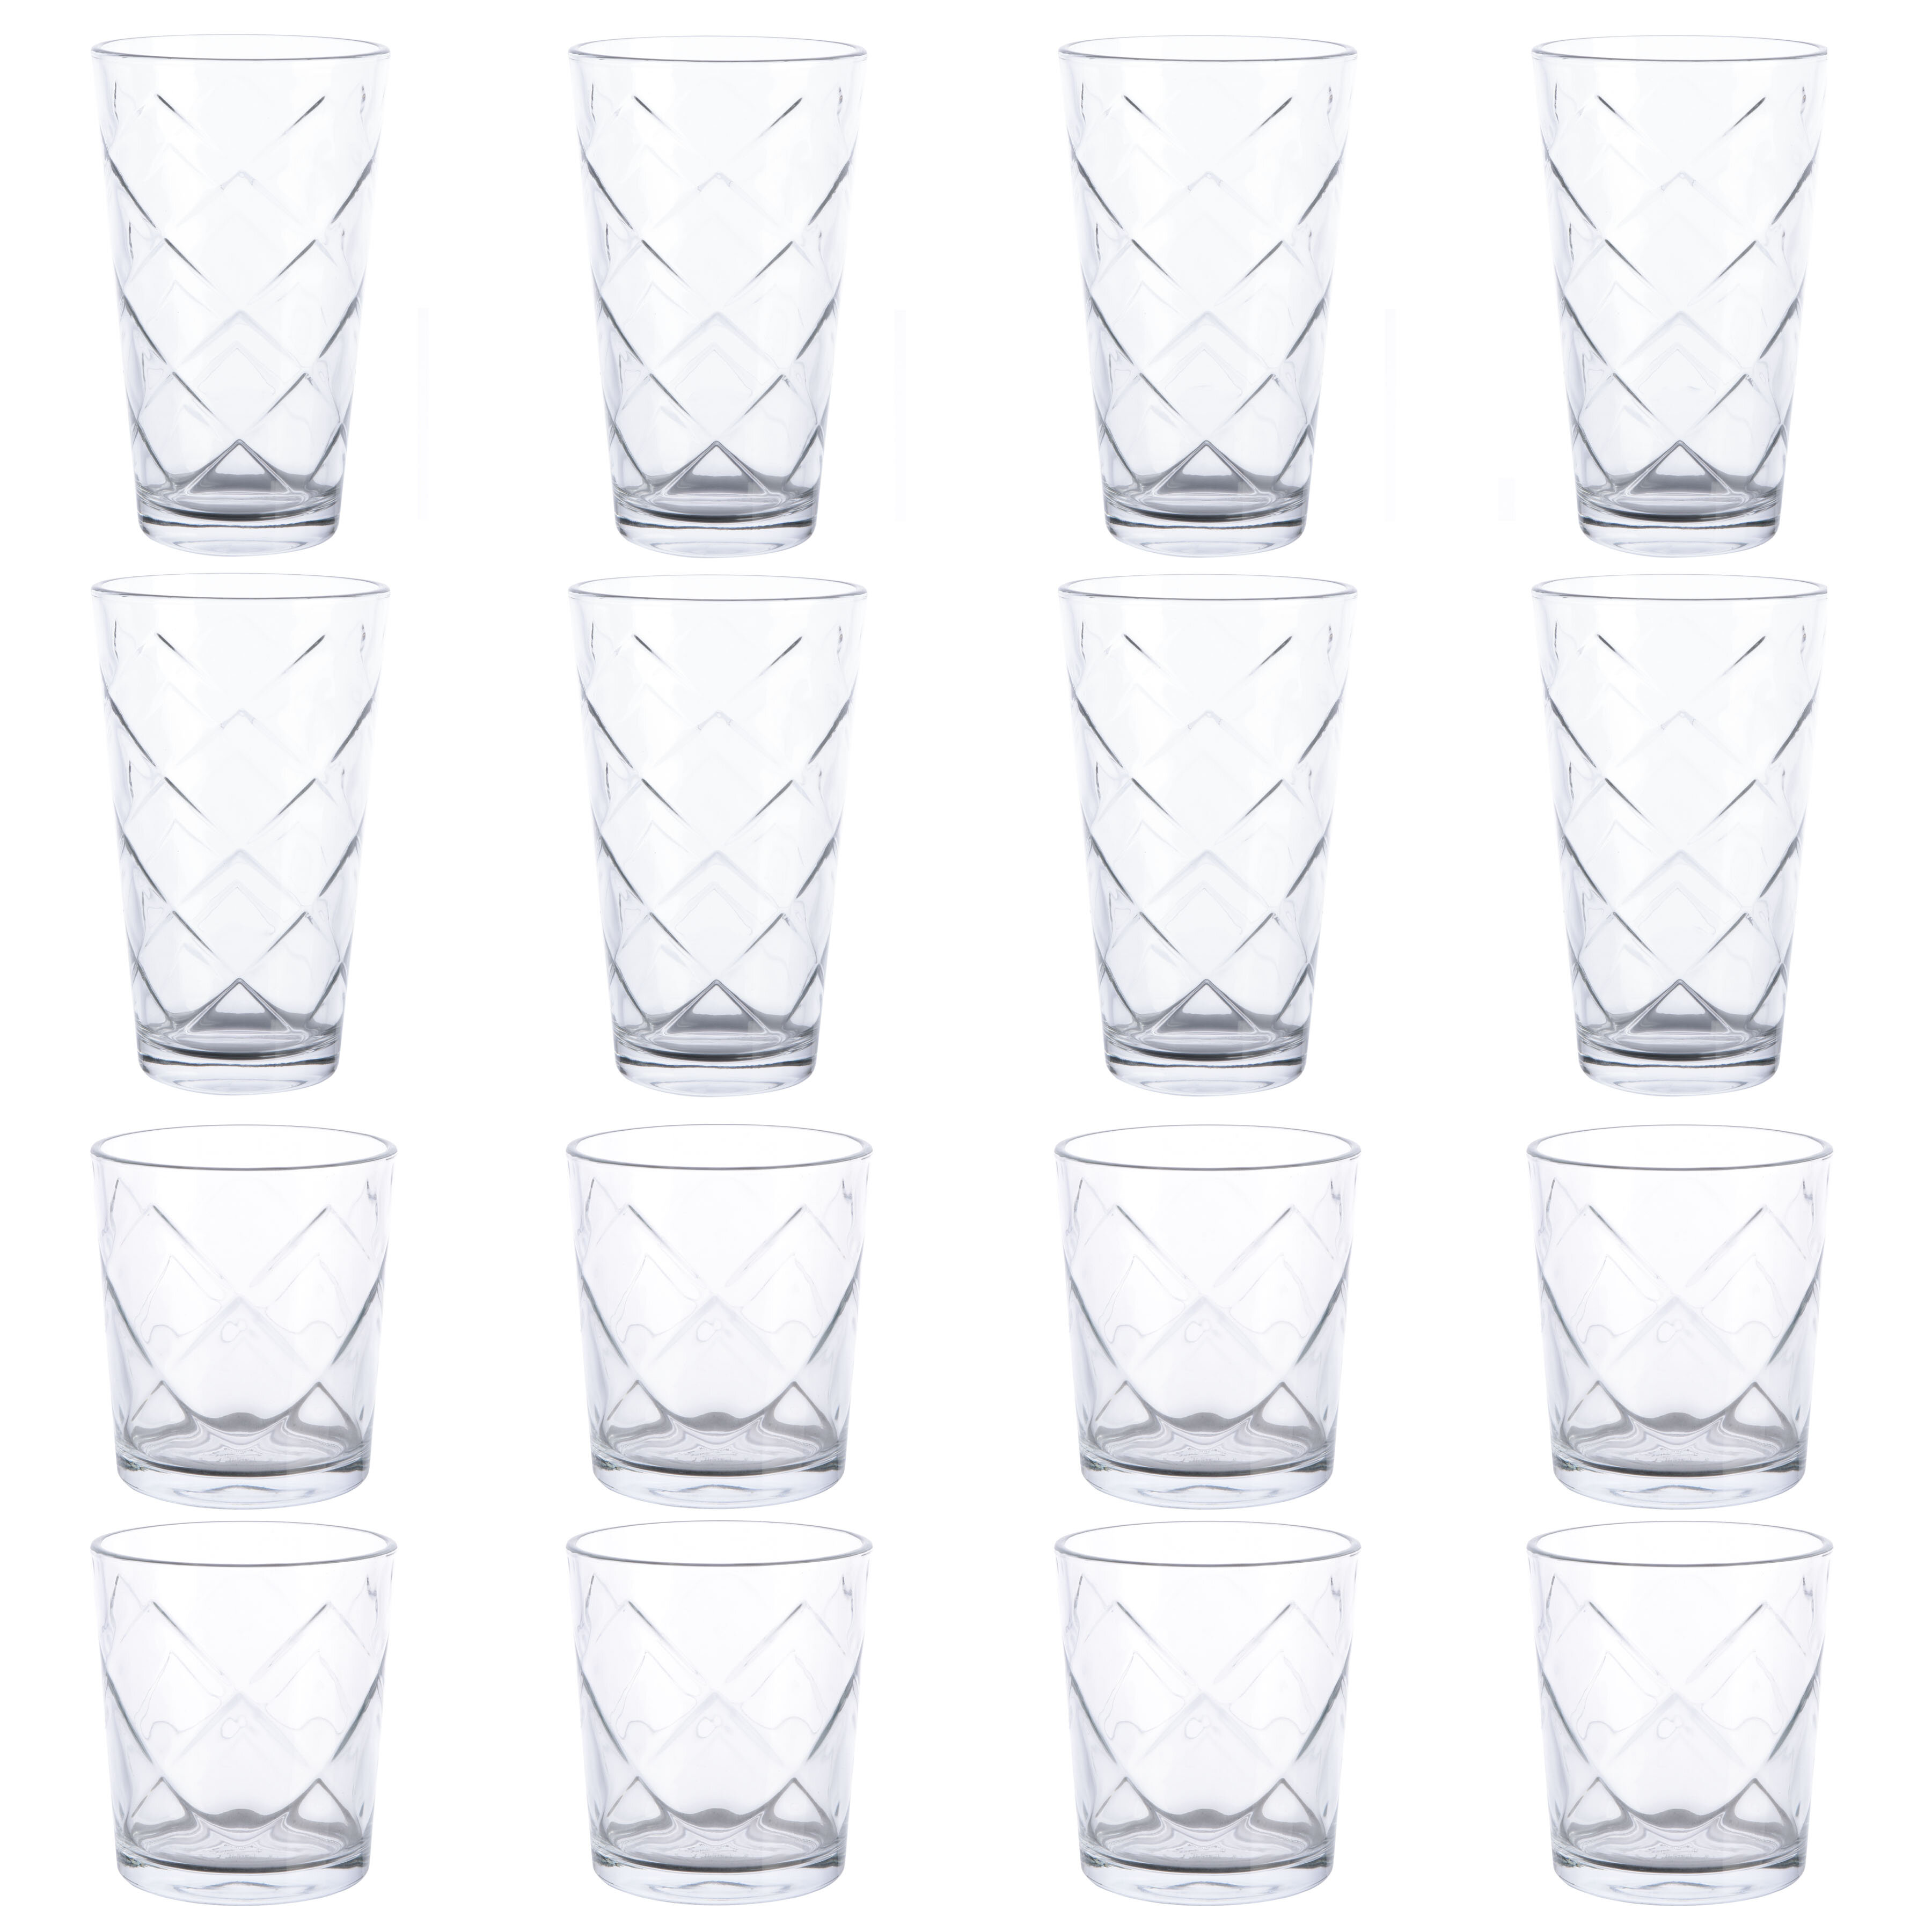 https://assets.wfcdn.com/im/42067184/compr-r85/1865/186548615/gibson-16-piece-glass-drinking-glass-assorted-glassware-set.jpg